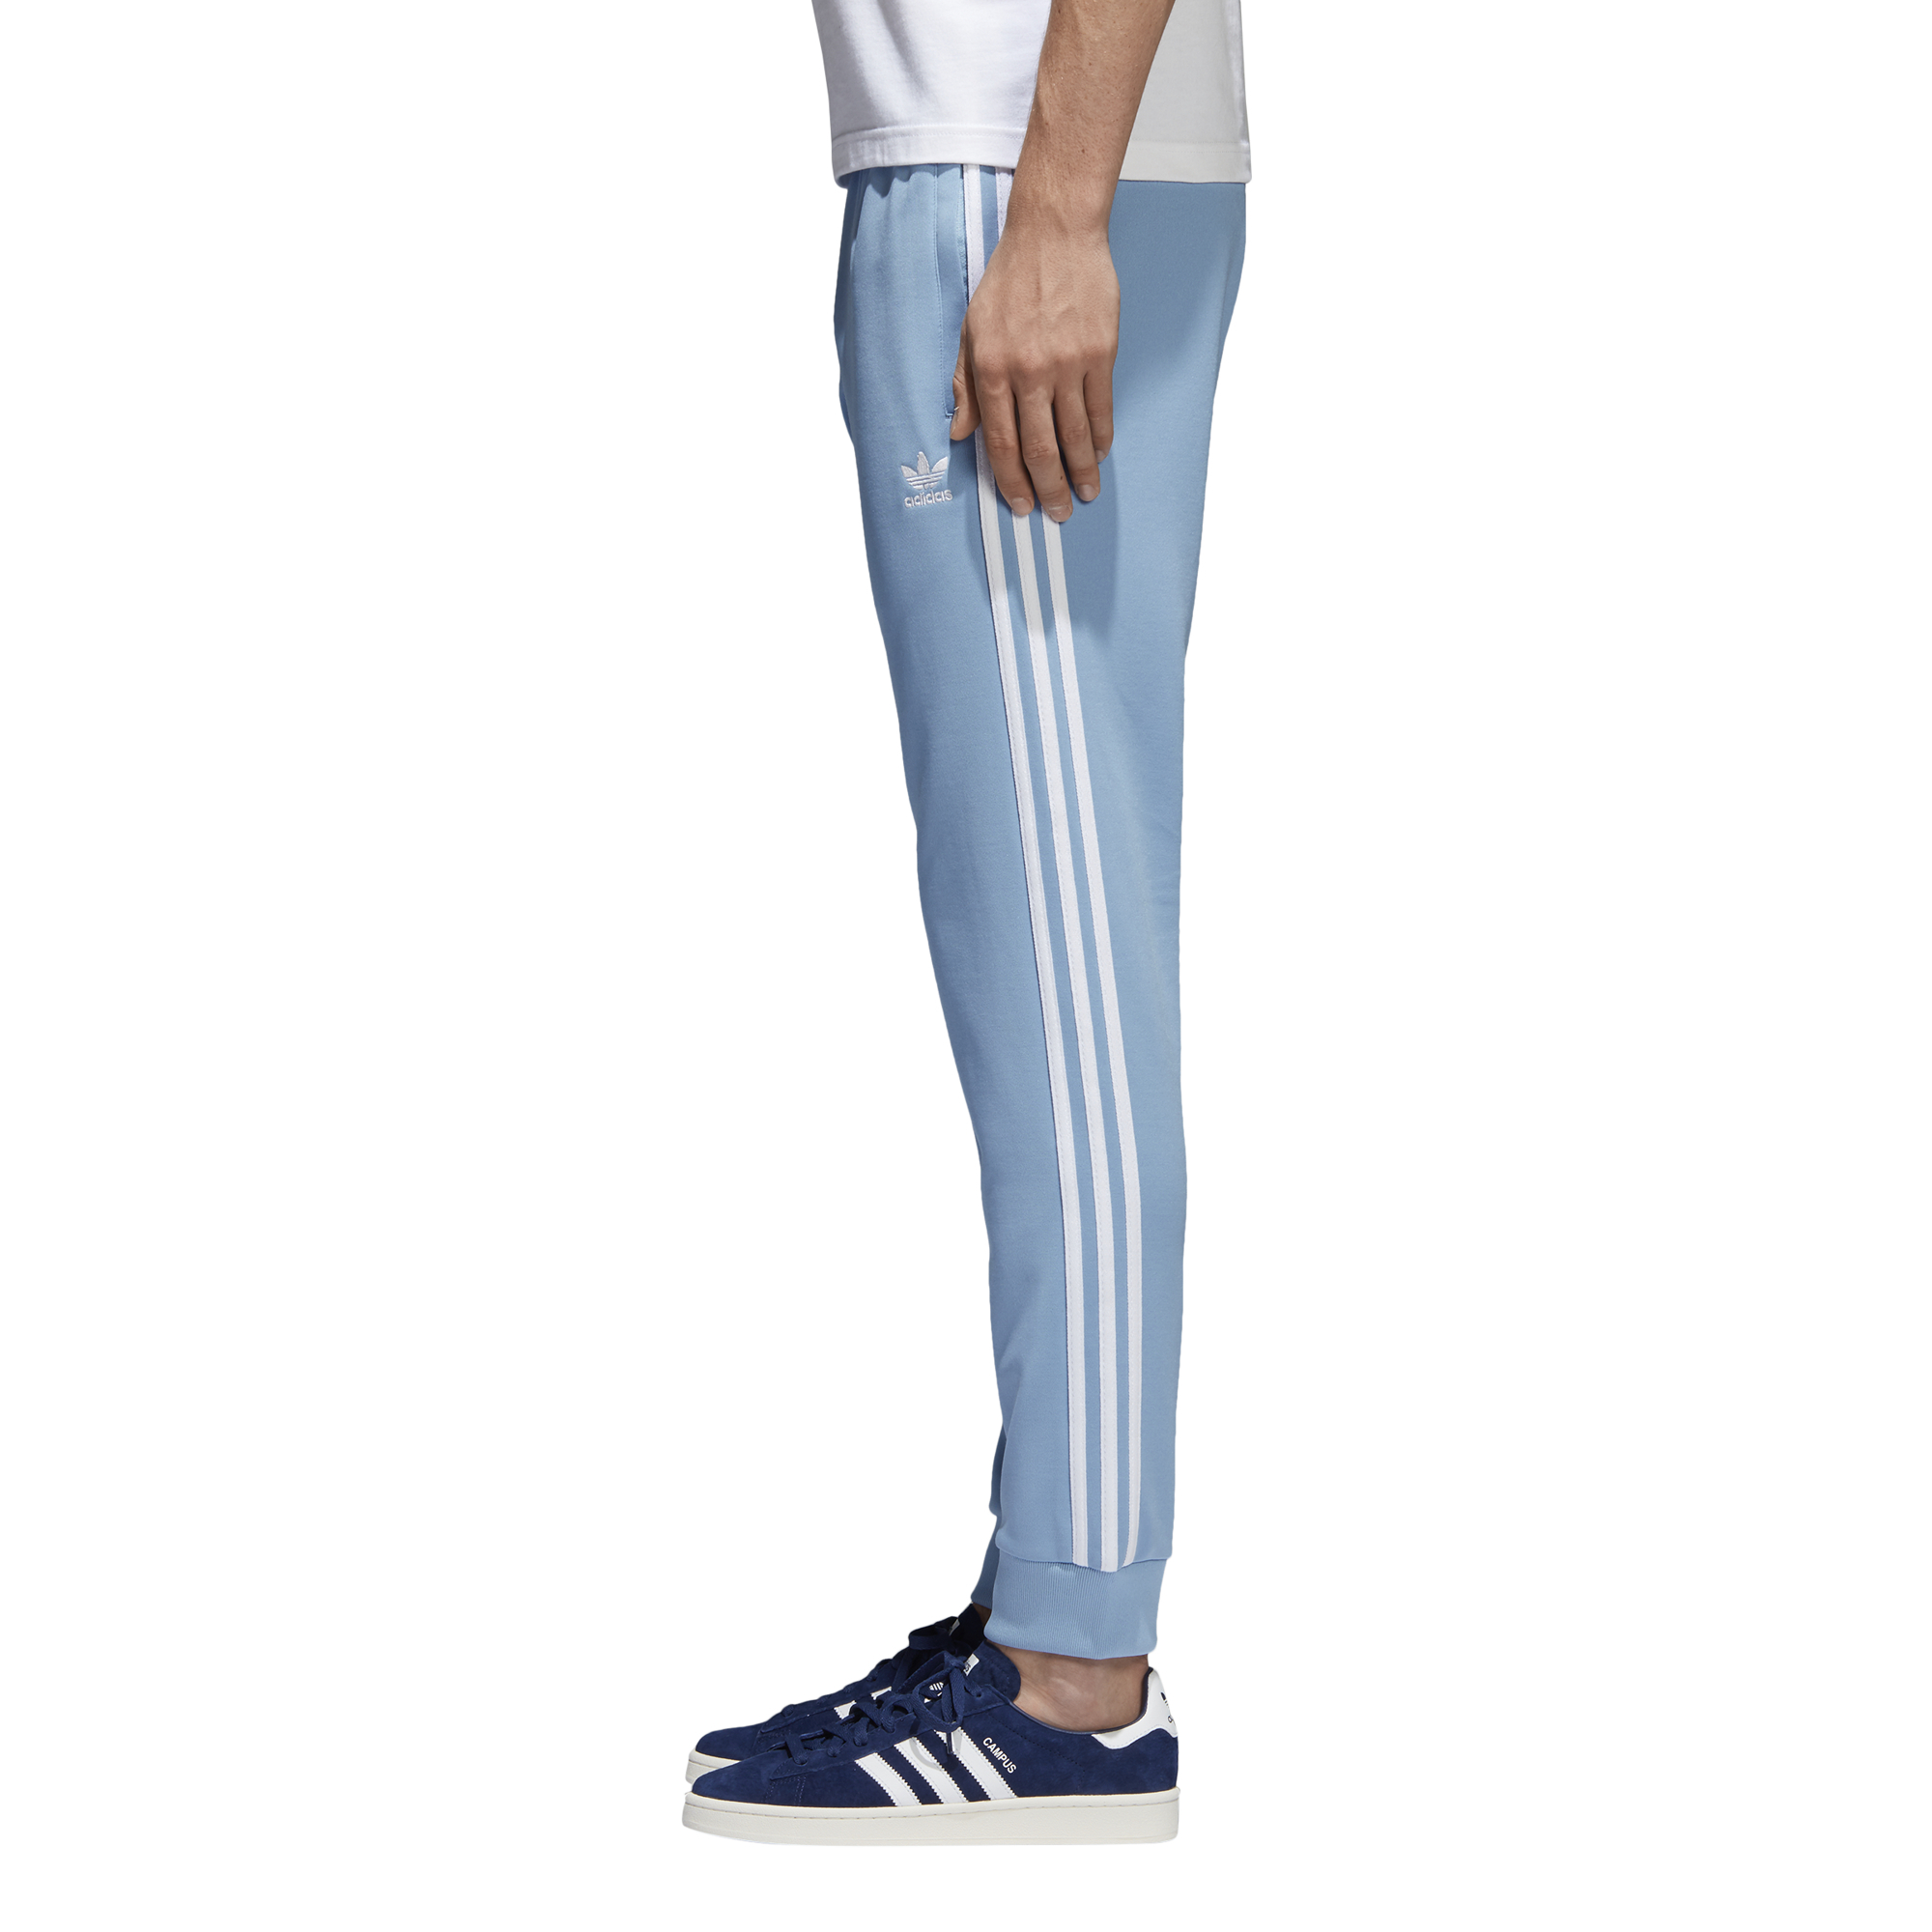 Adidas Superstar Pants (ASH